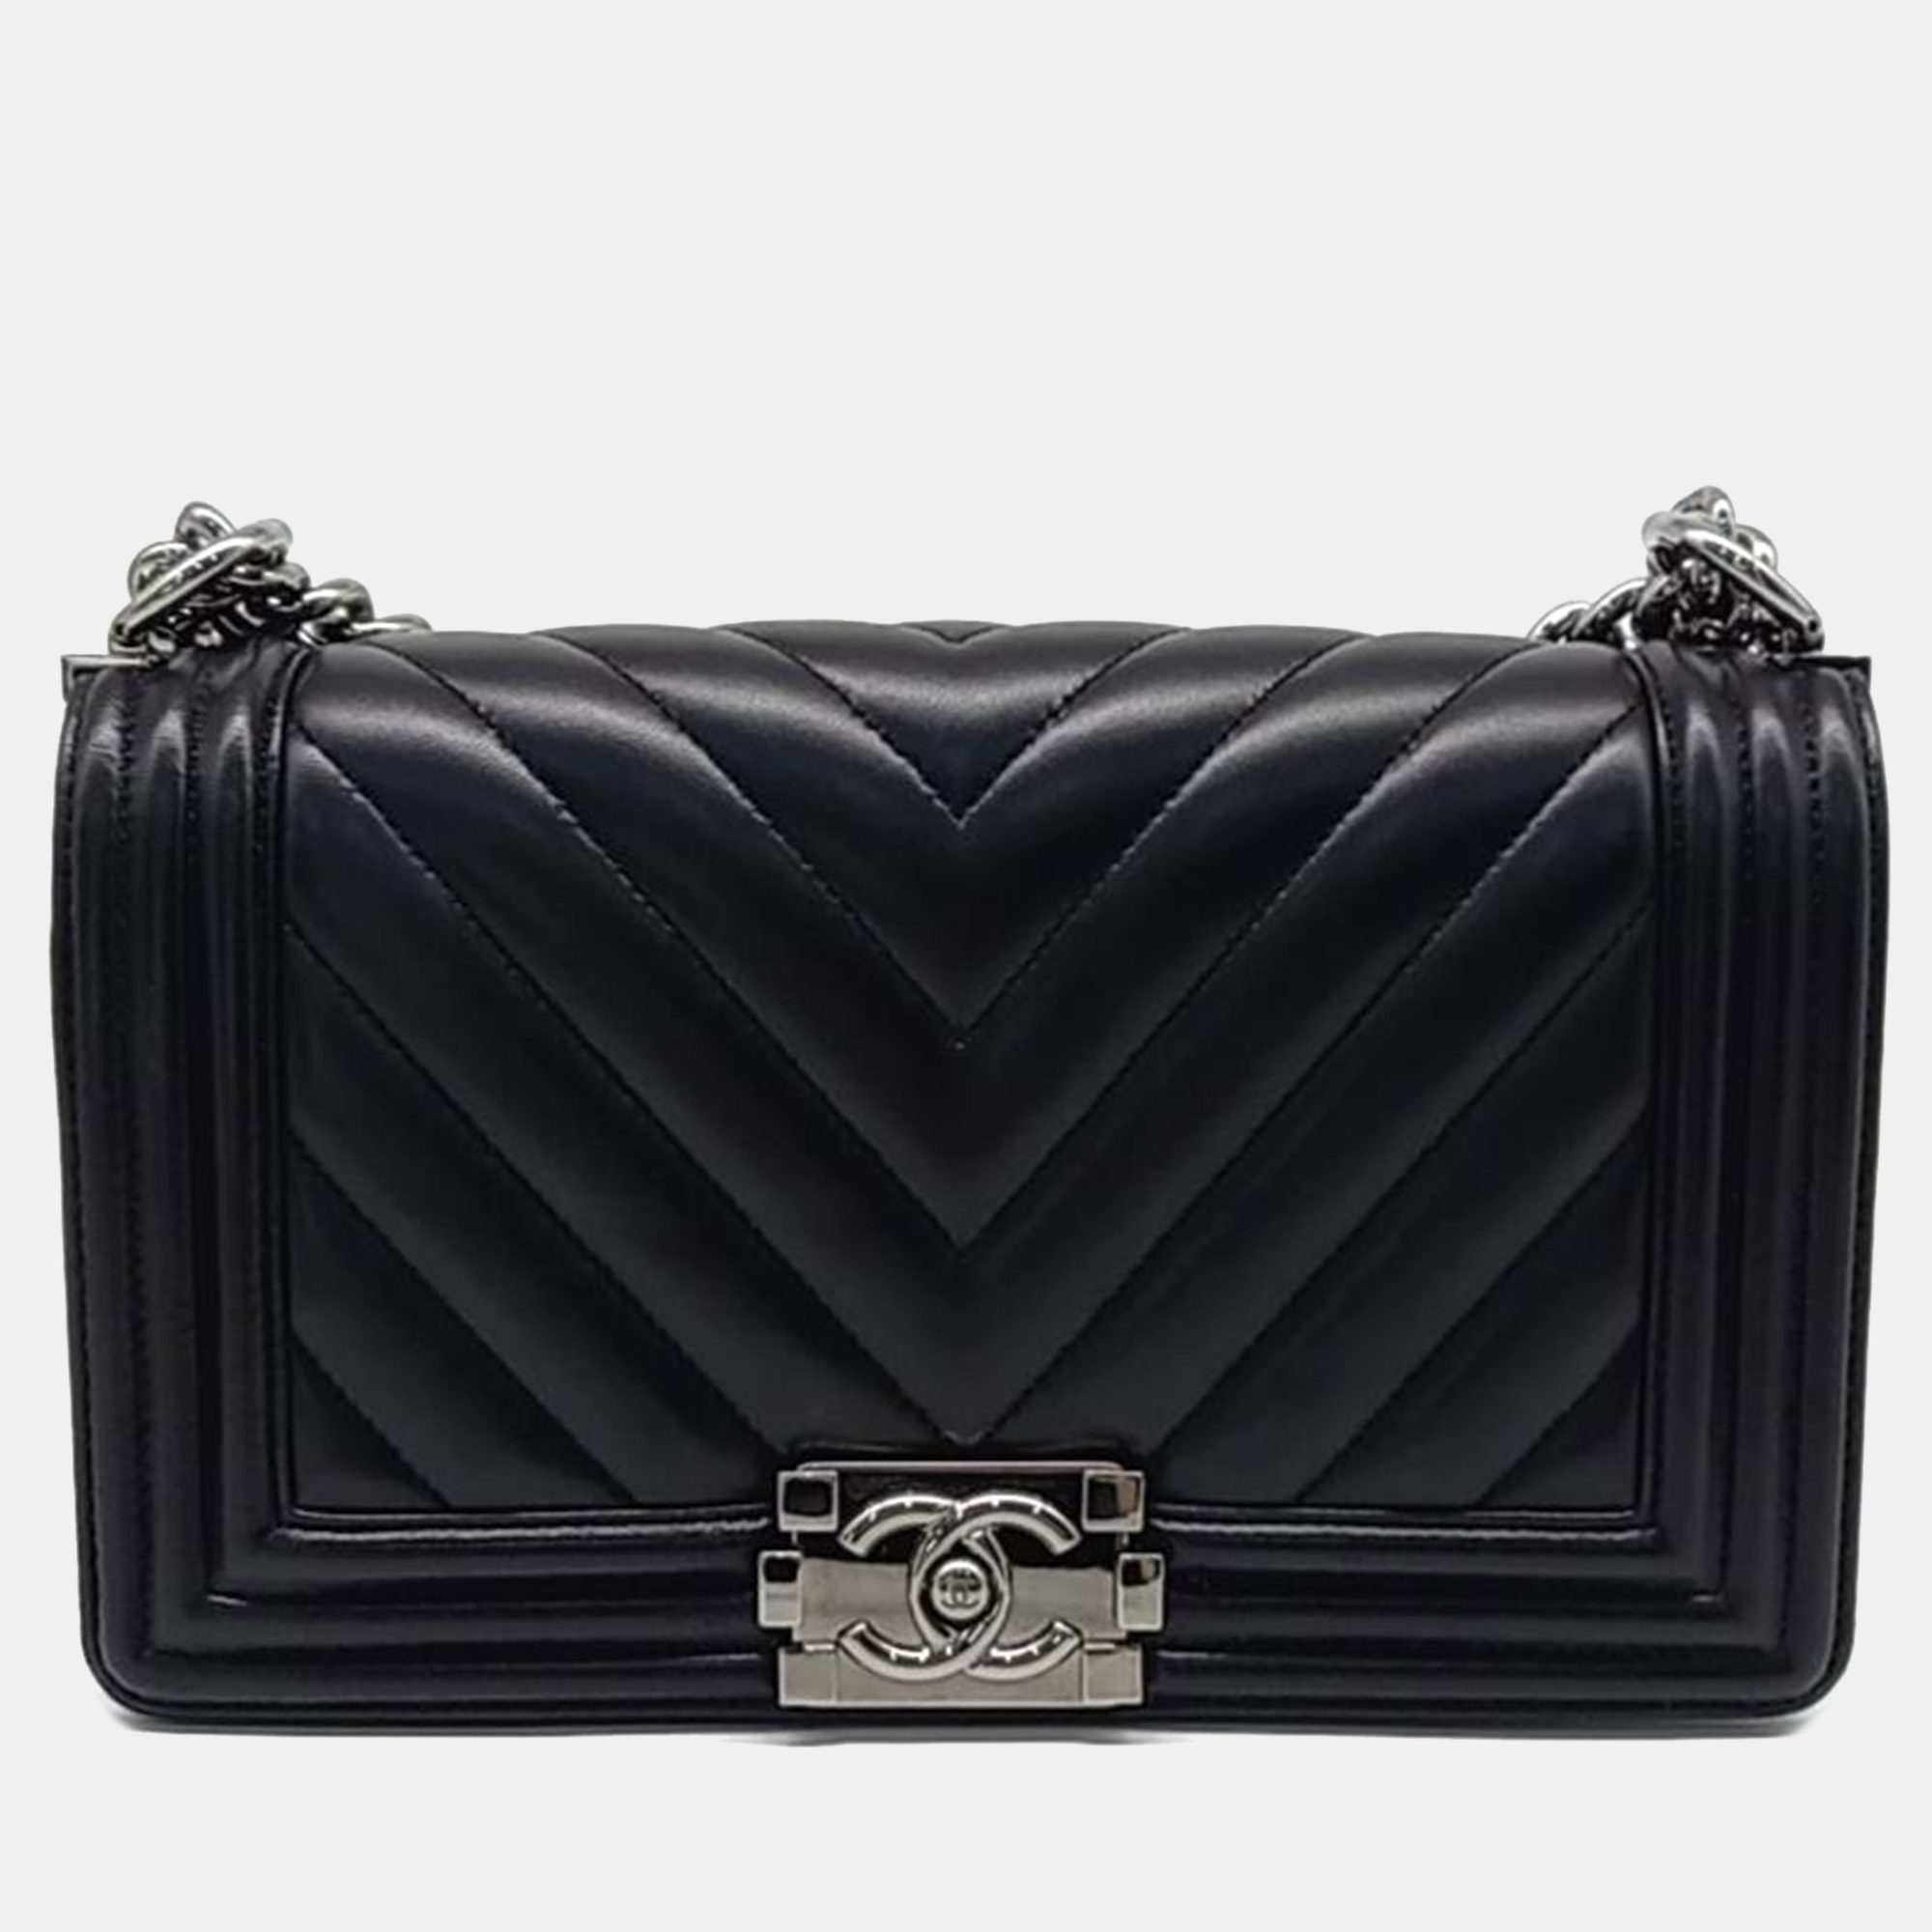 Chanel black caviar leather medium boy bag